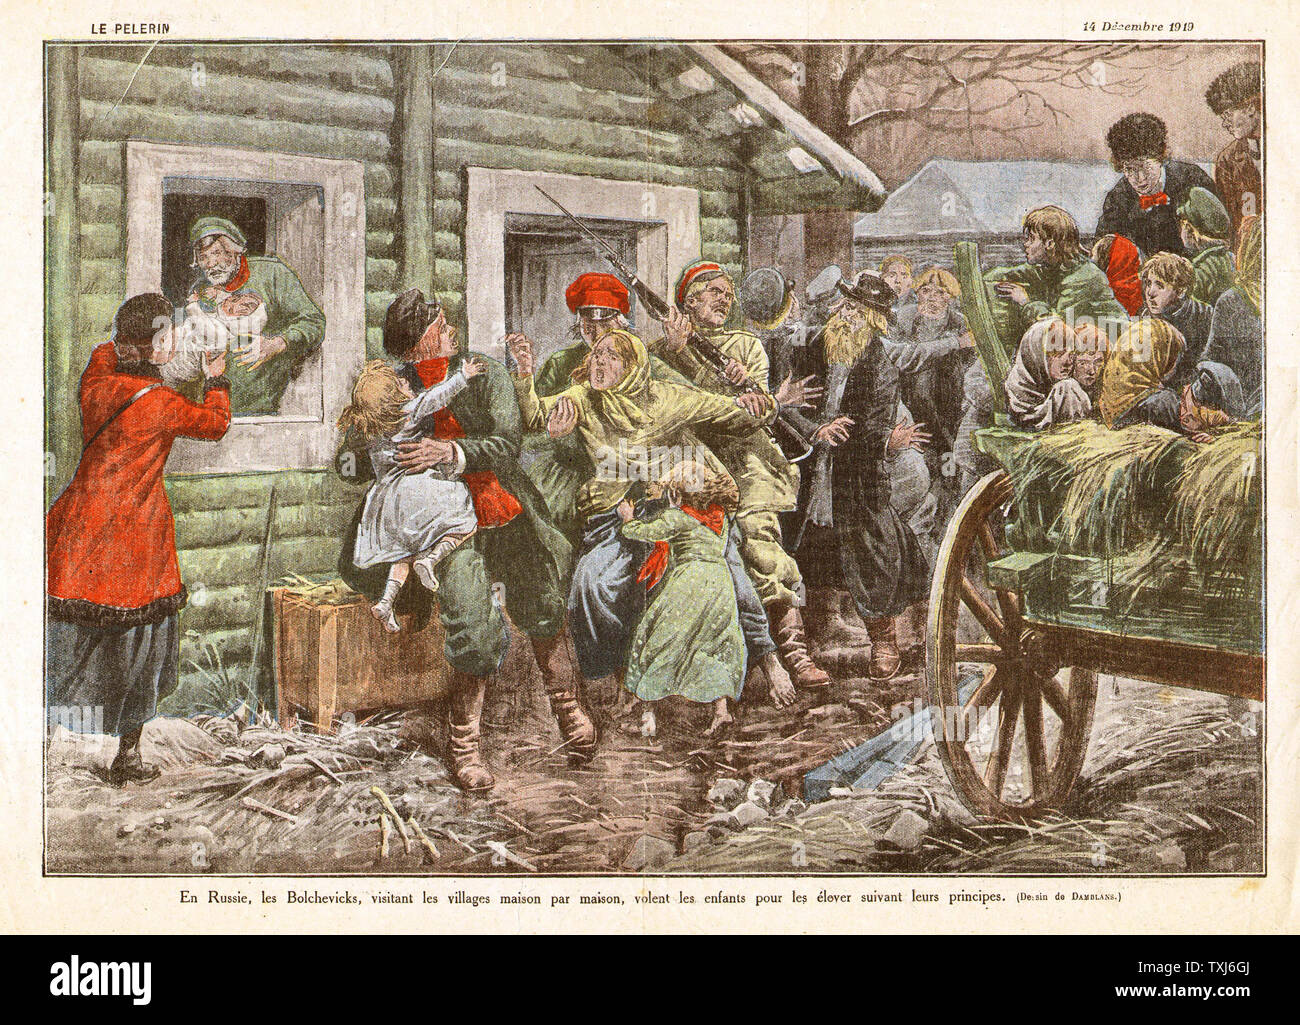 1919 La rivista Perelin illustrazione russa di reporting dei disordini civili con i bolscevichi Foto Stock